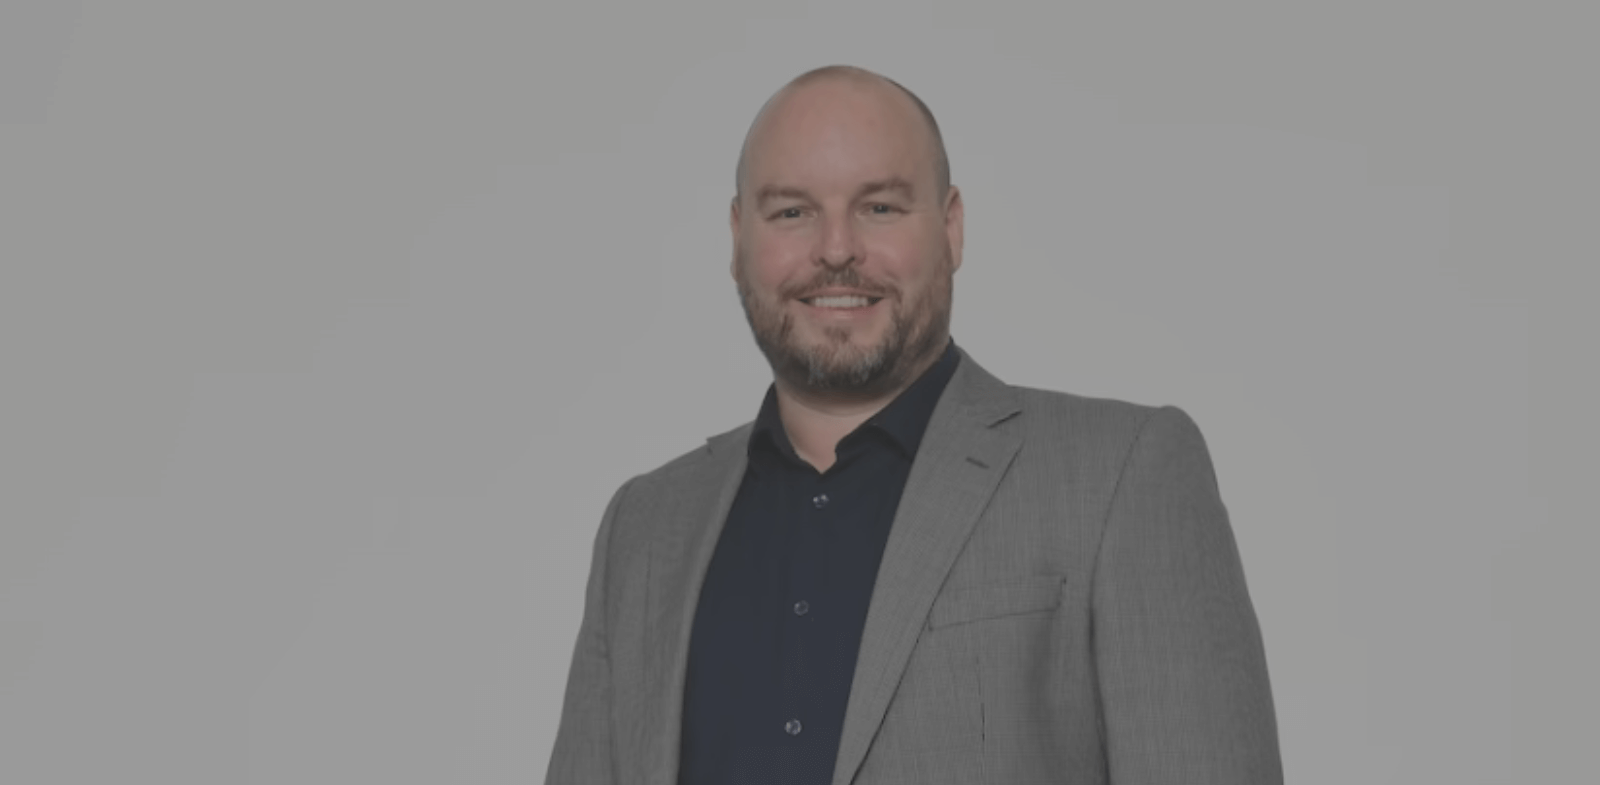 2022 NZ Marketer of the Year finalist – Sean Wiggans